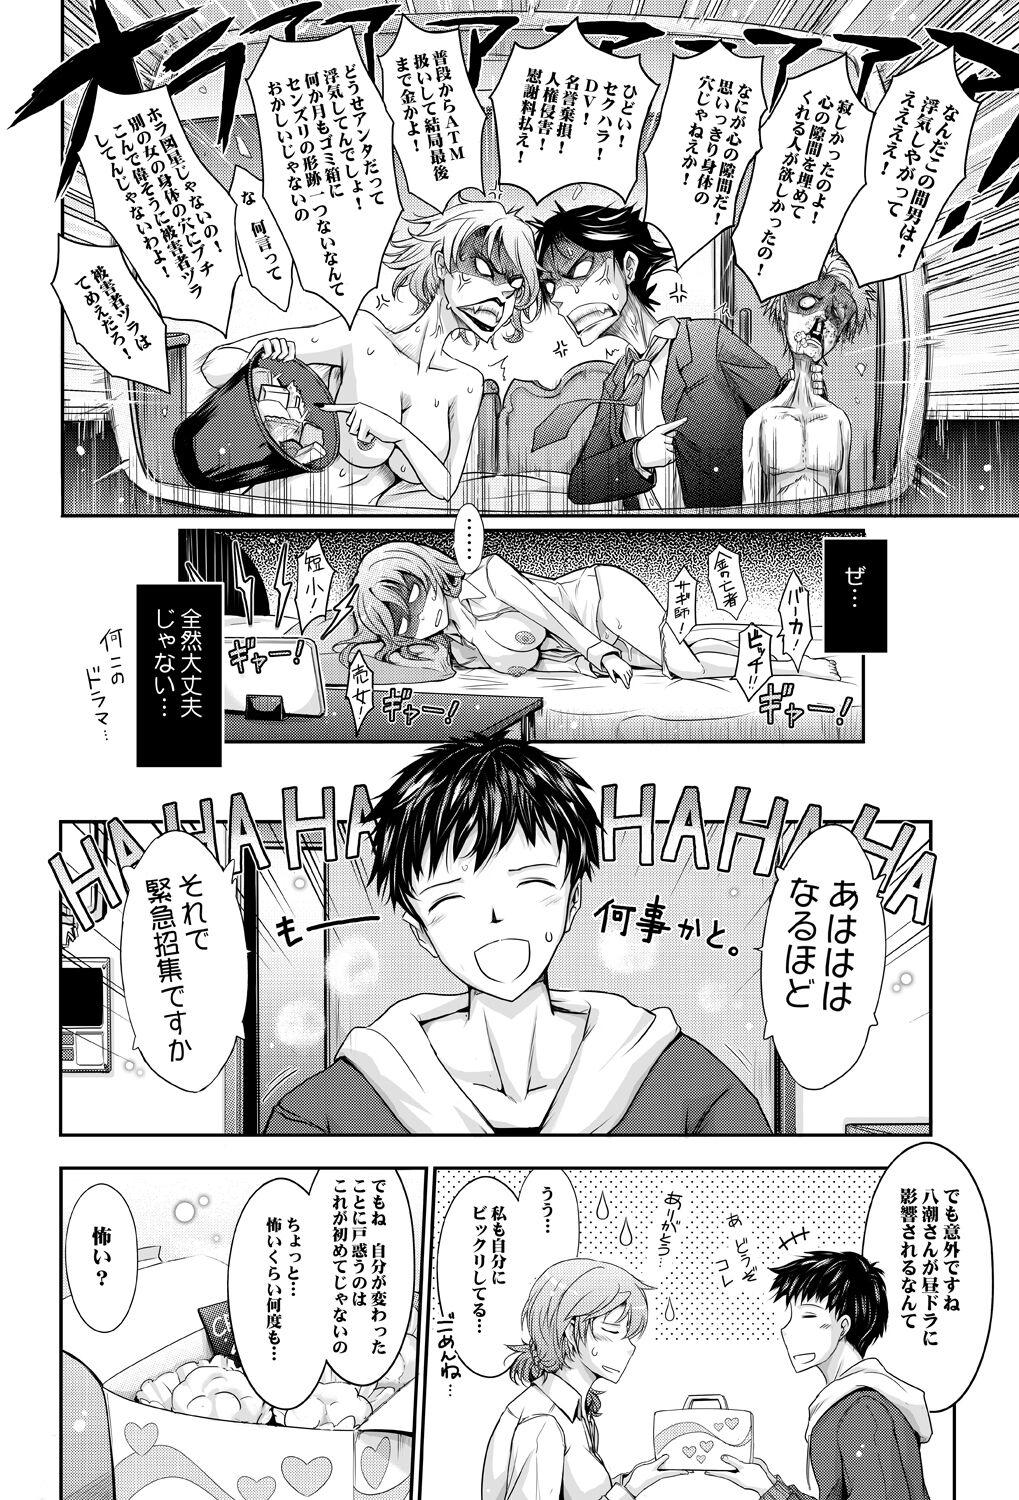 Hymen Amaku Iyagaru Kanojo no Chijou Episode 3 - Original Gape - Page 10